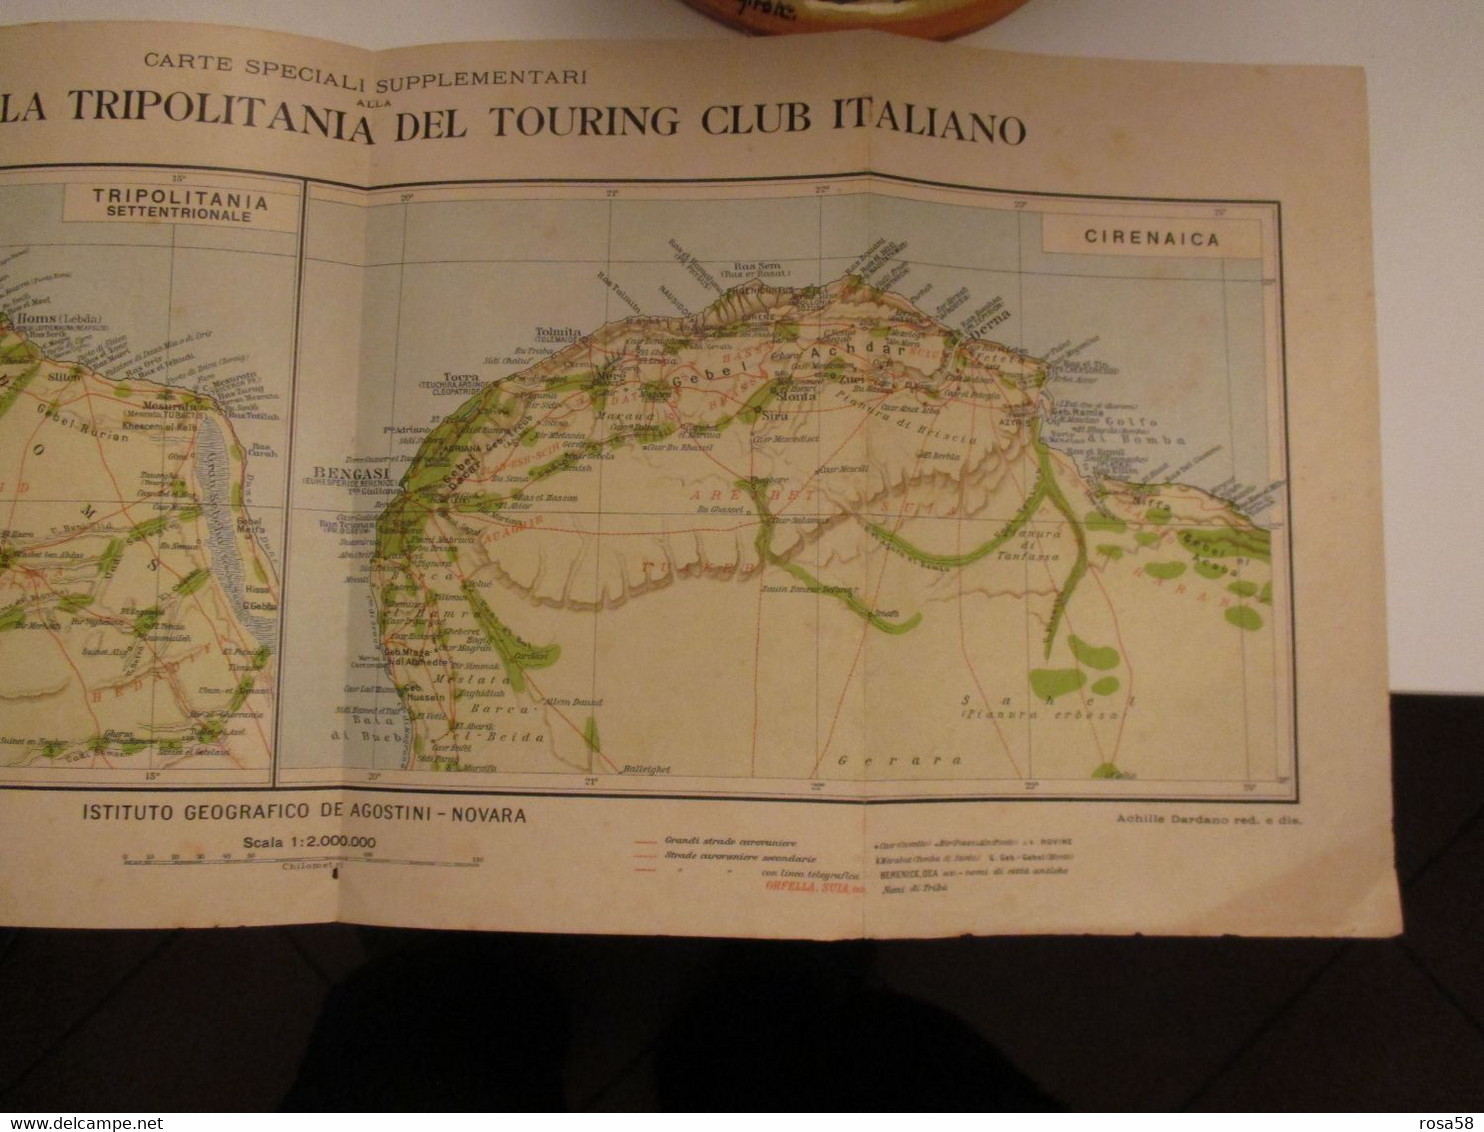 AFRICA Libia Carta Geografica Edizione DE AGOSTINI Novara  Cirenaica Tripolitania Touring Club Italiano Coloinie Italian - World